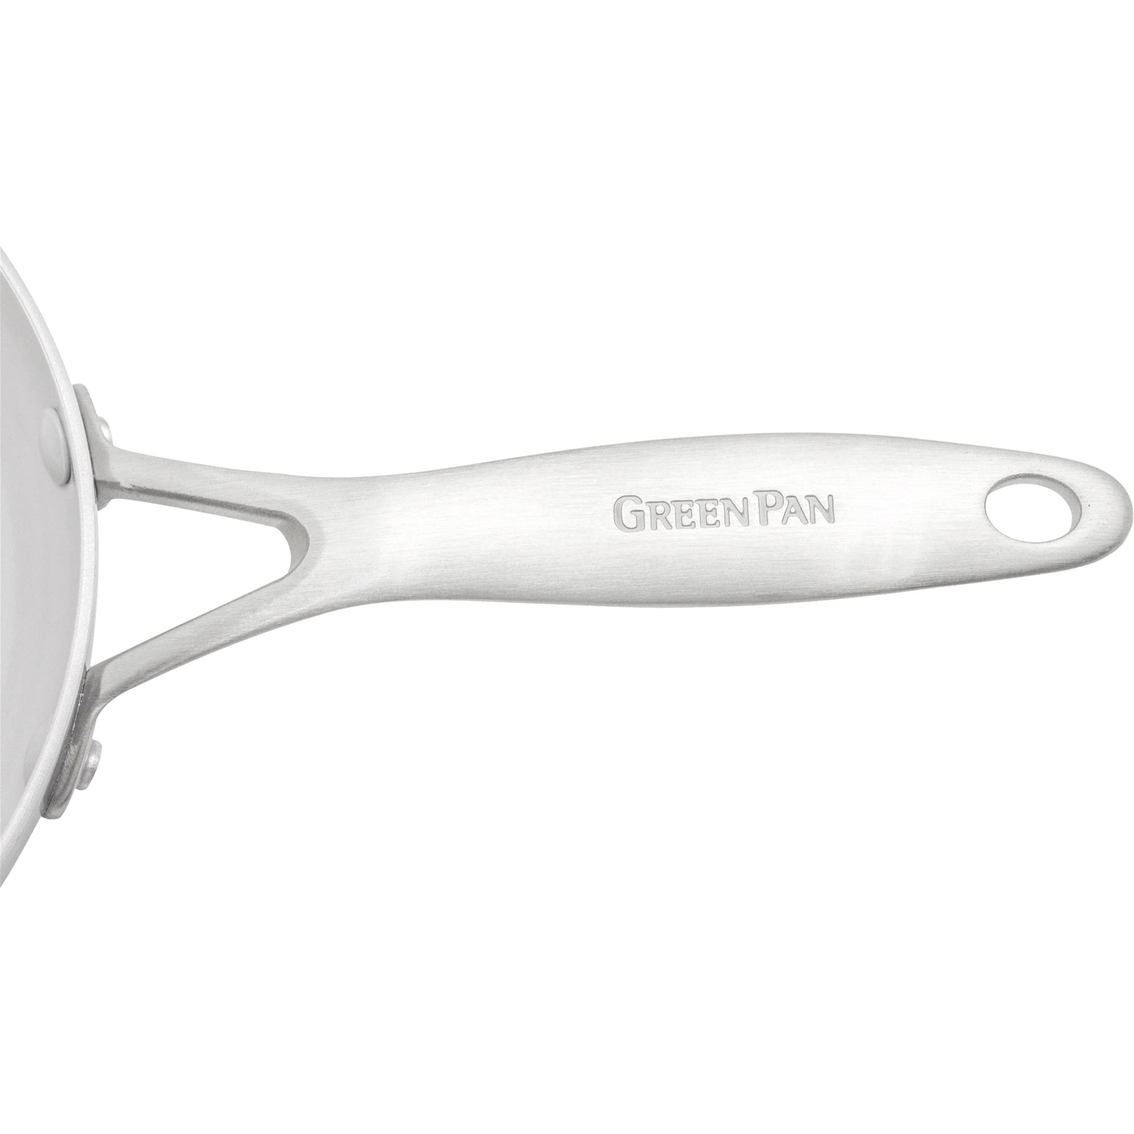 Greenpan - Venice Pro Ceramic Covered Non-Stick Chef's Pan, 3.5